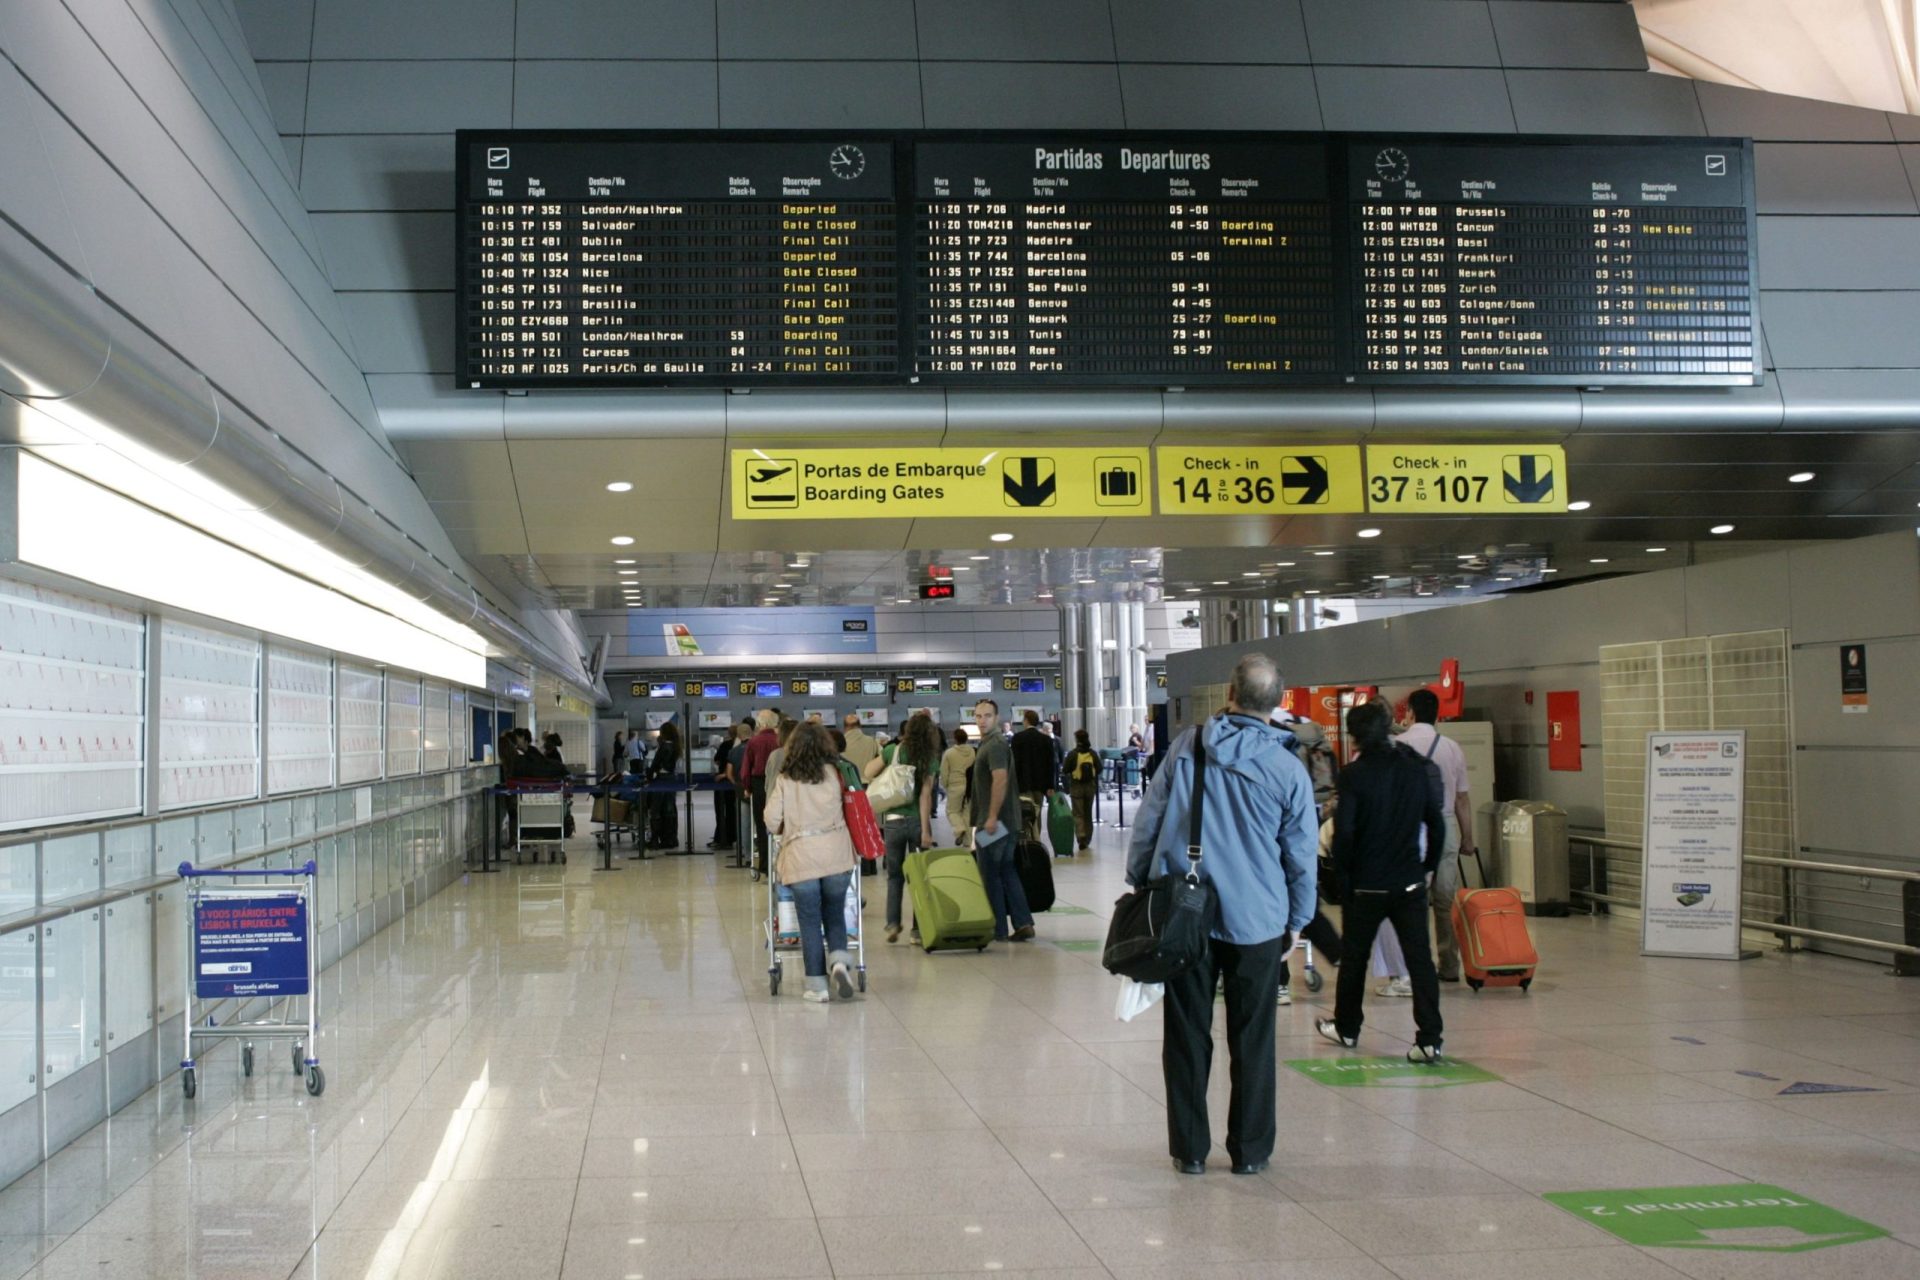 Mulher detida no aeroporto de Lisboa com cocaína no organismo